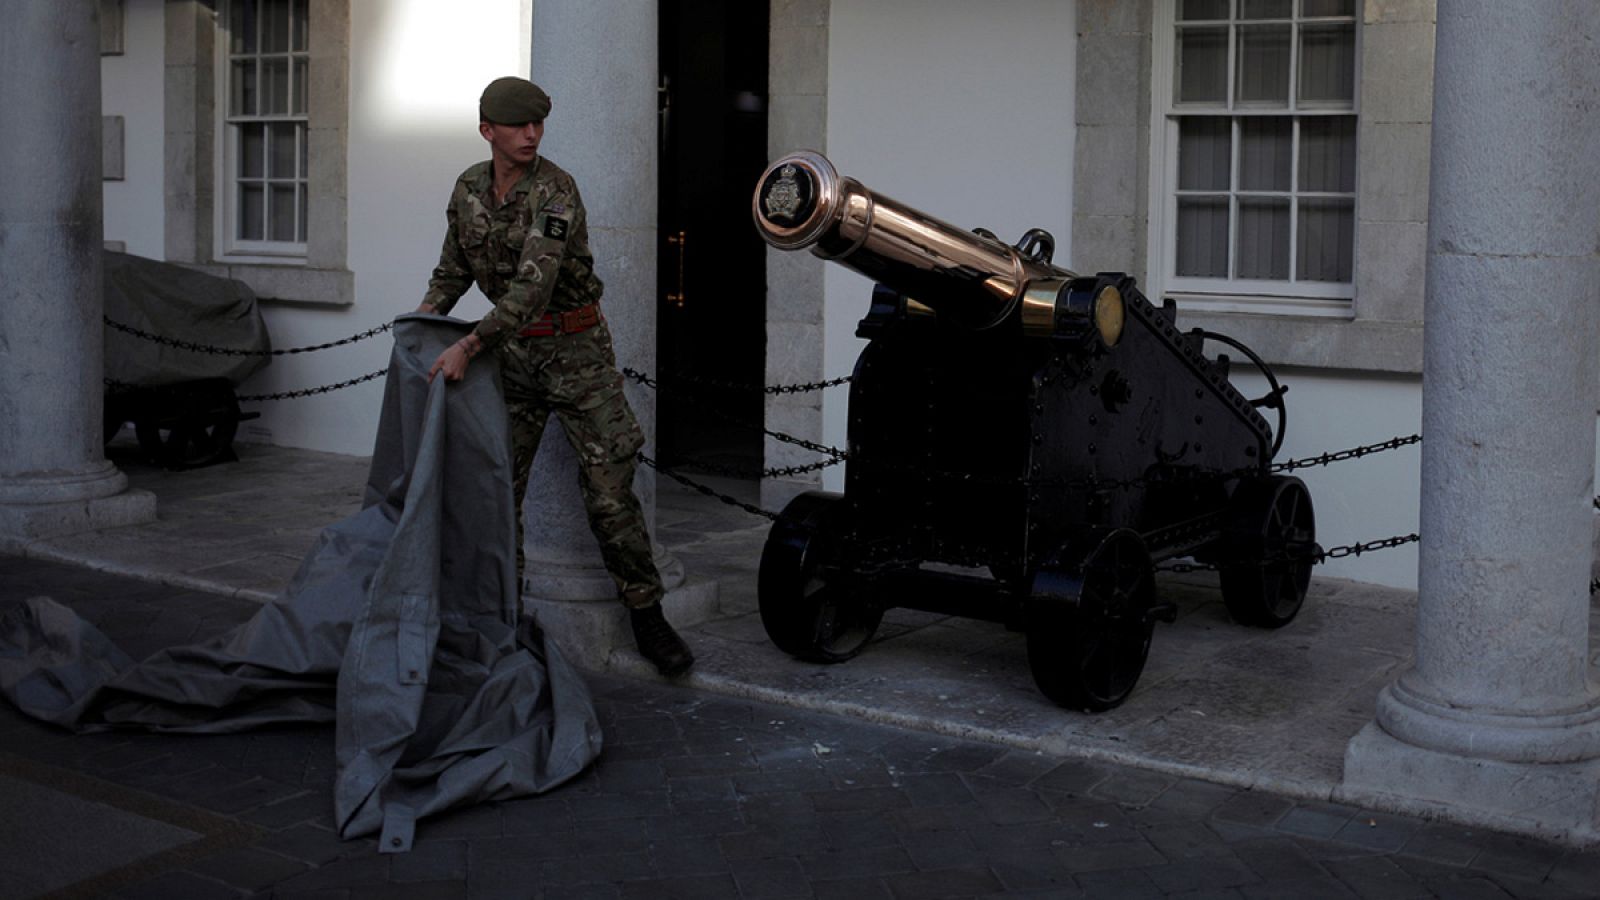 Un soldado cubre un cañón antiguo en The Convent, el palacio sede del gobierno de Gibraltar.